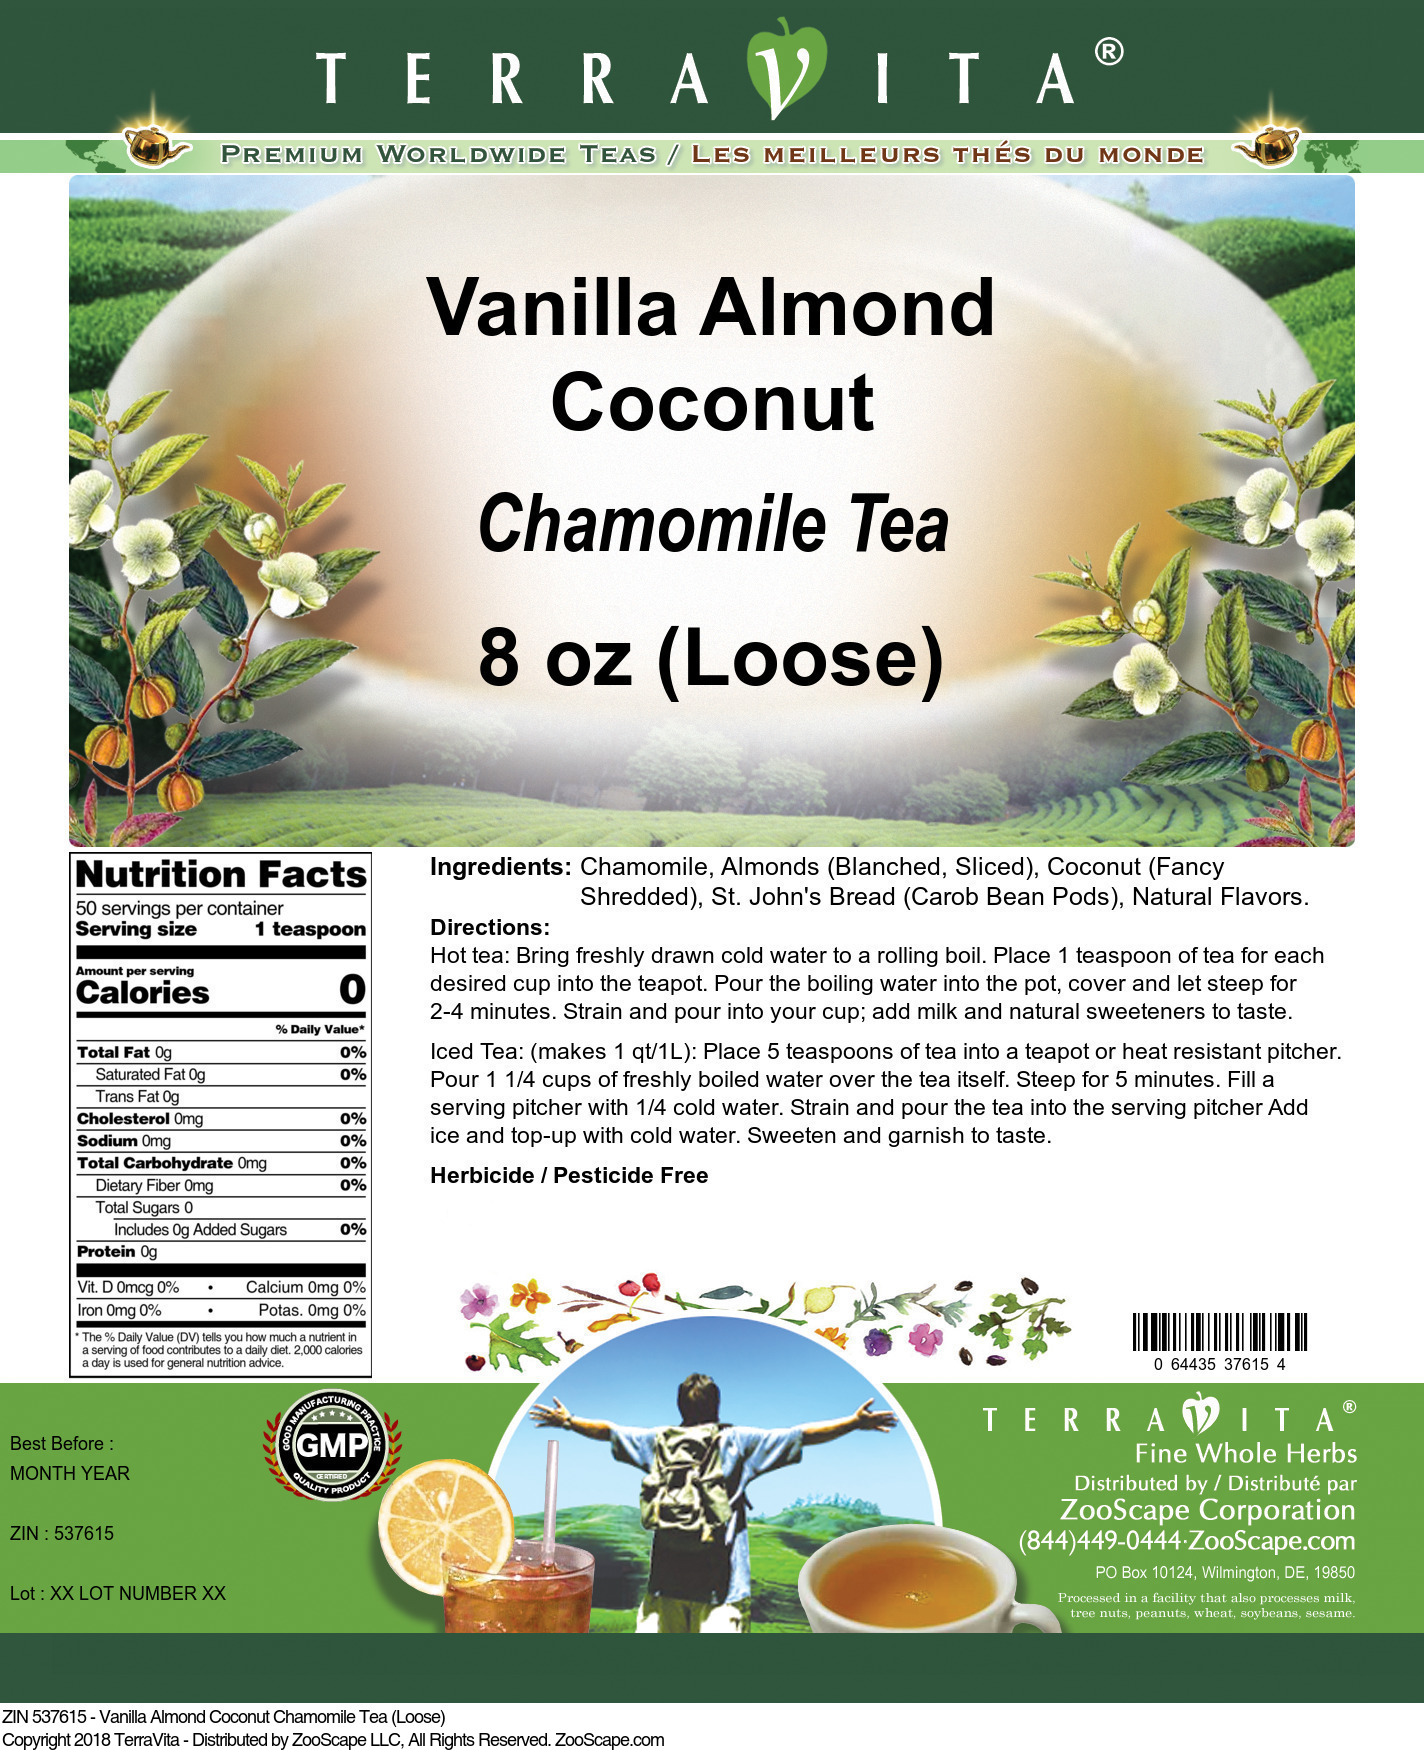 Vanilla Almond Coconut Chamomile Tea (Loose) - Label